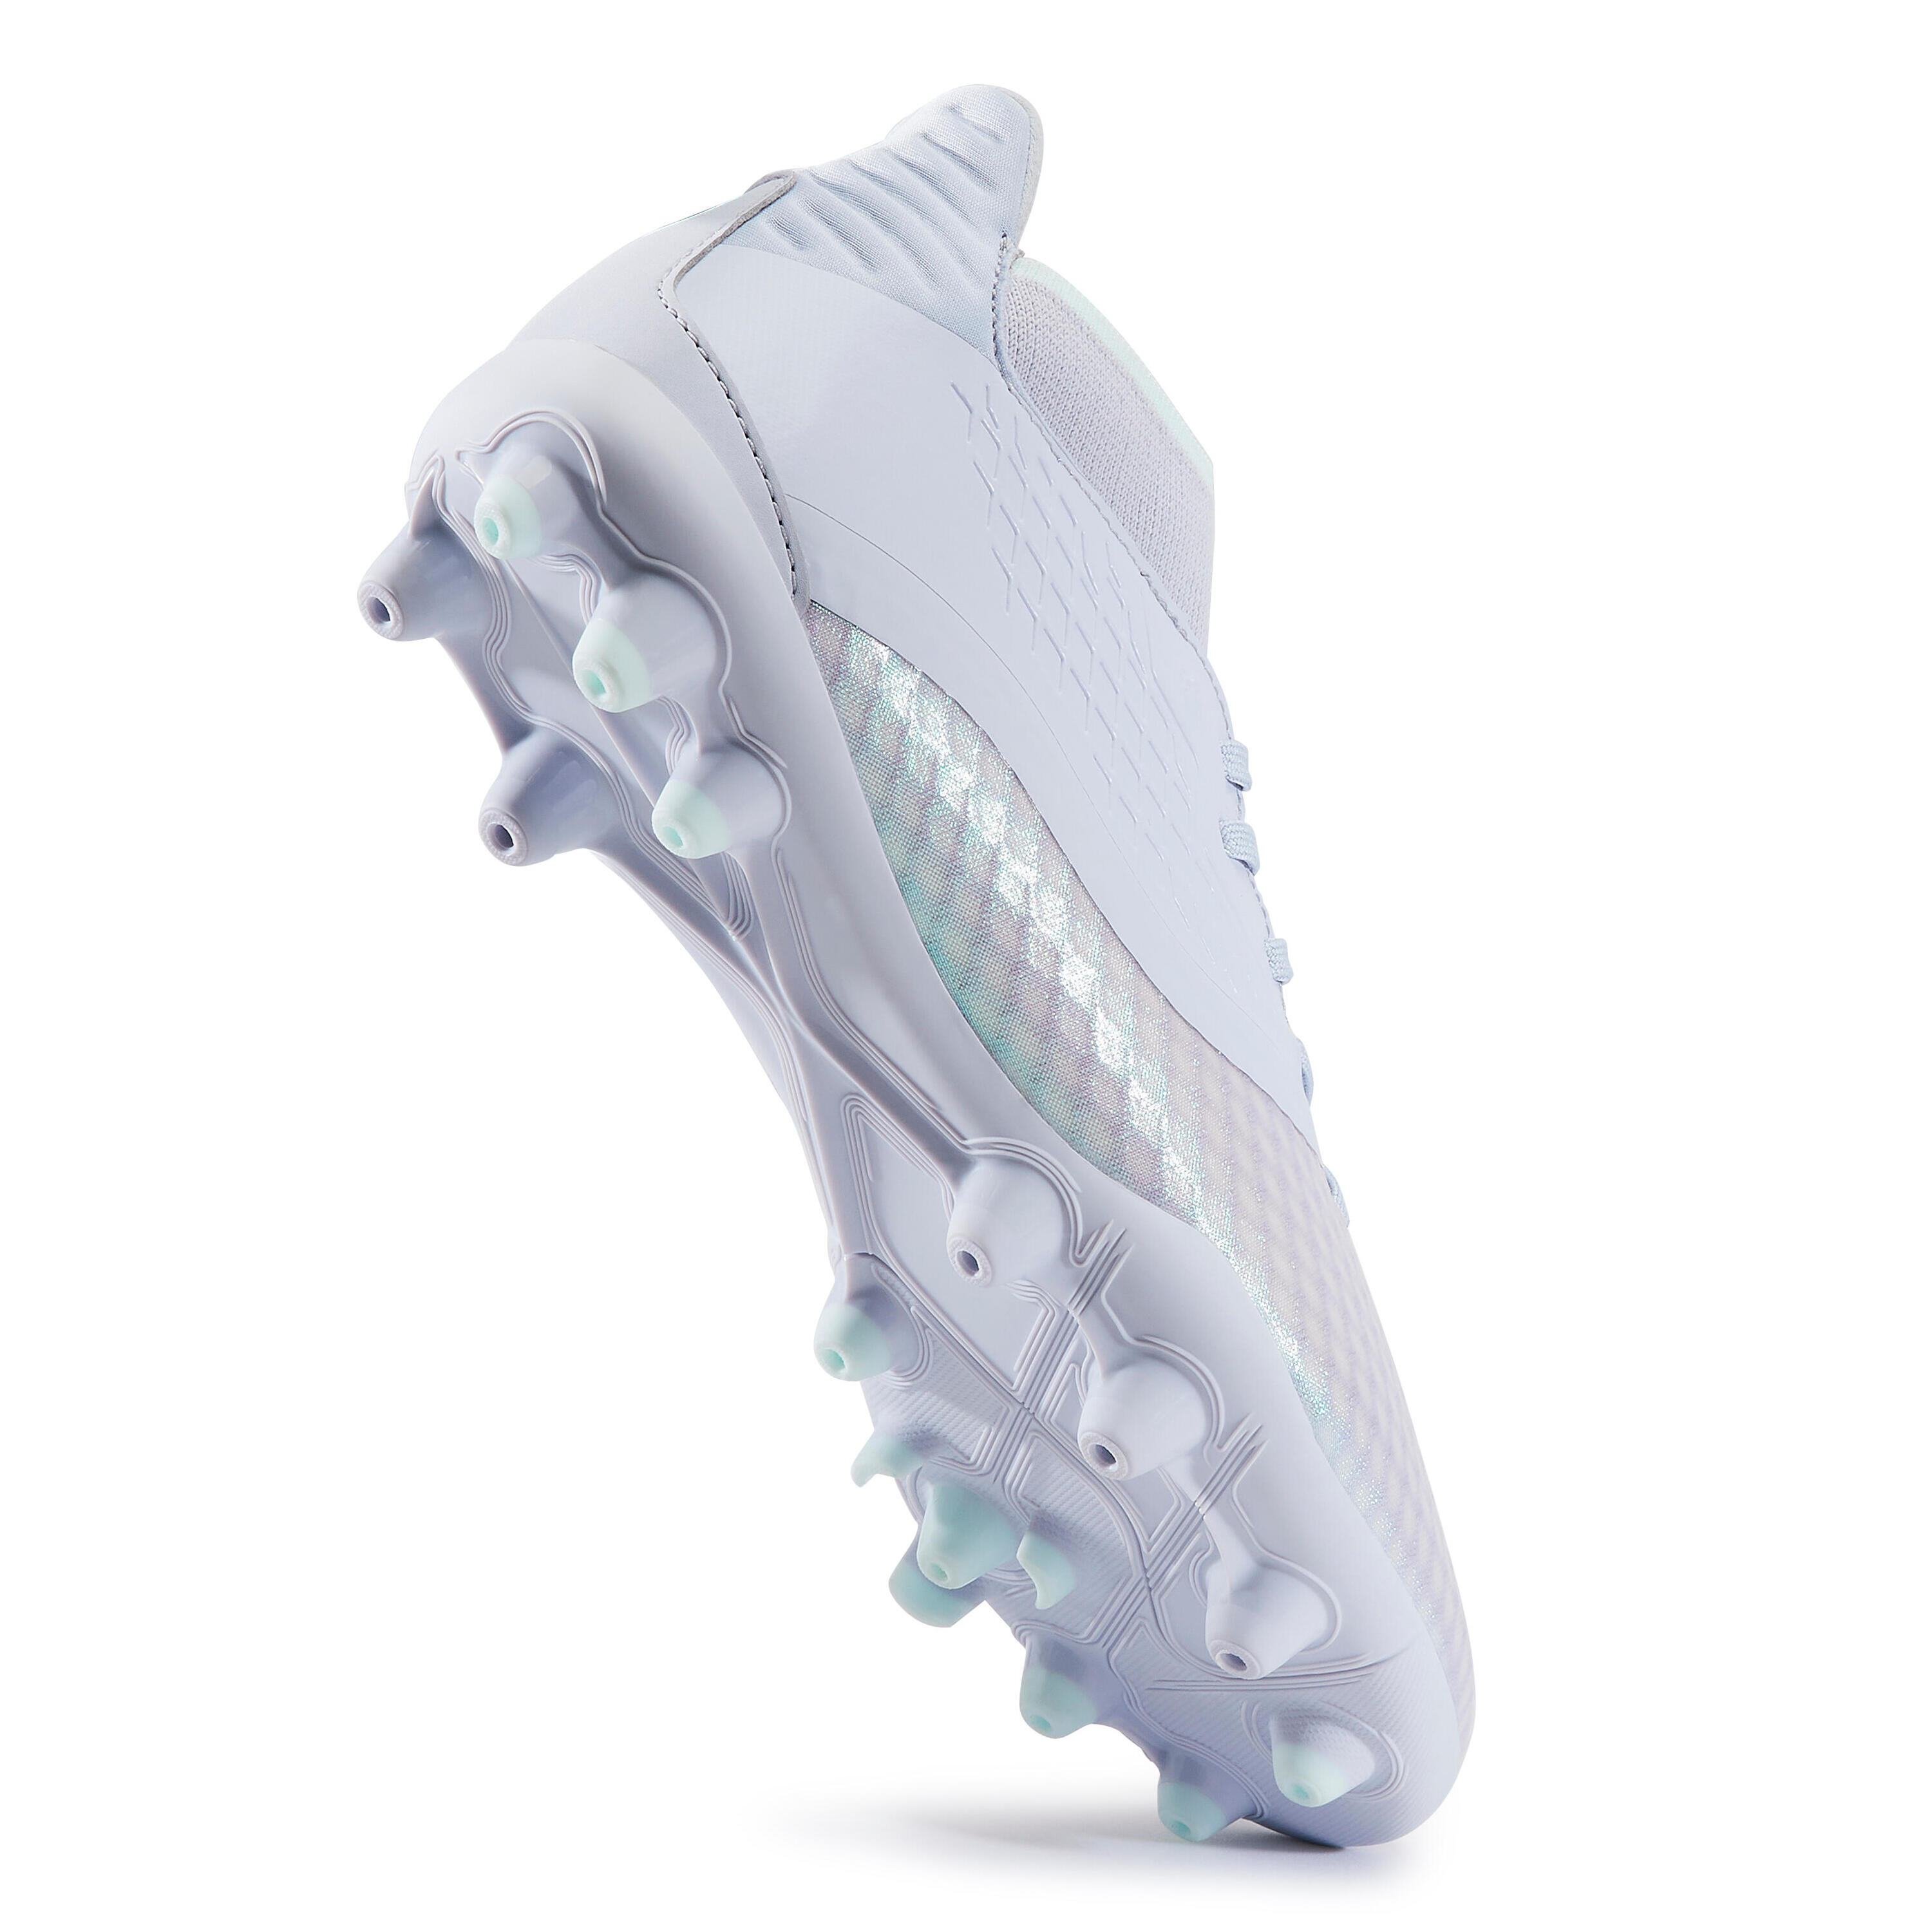 Women's MG Football Boots Viralto+ III - Grey 5/8